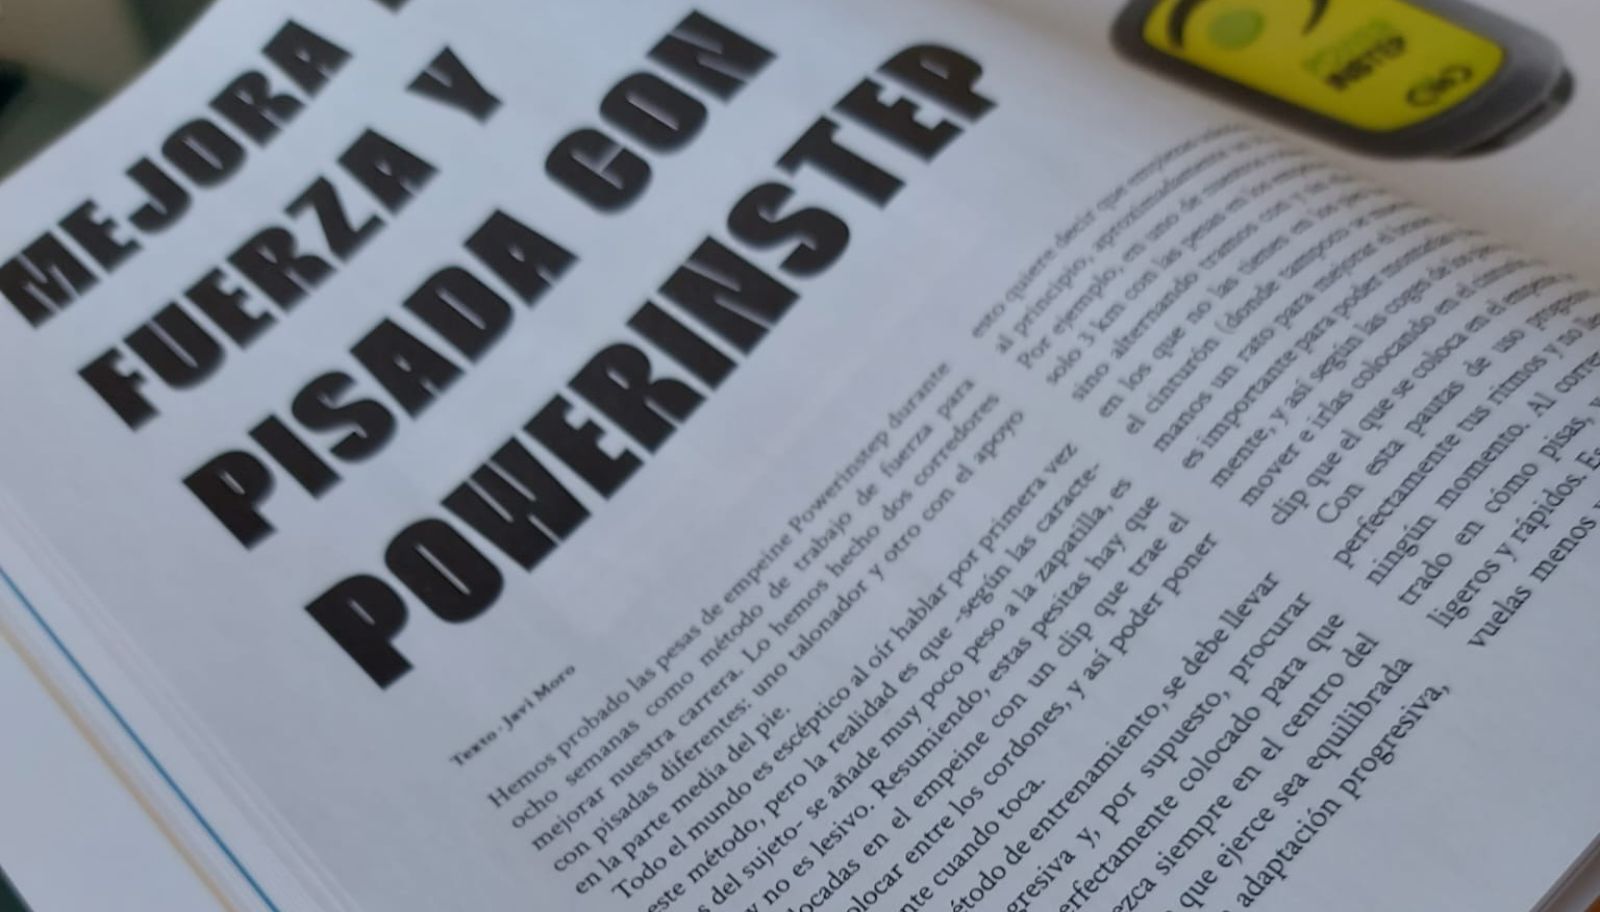 Soy Corredor publica un artículo sobre Powerinstep en su versión en papel